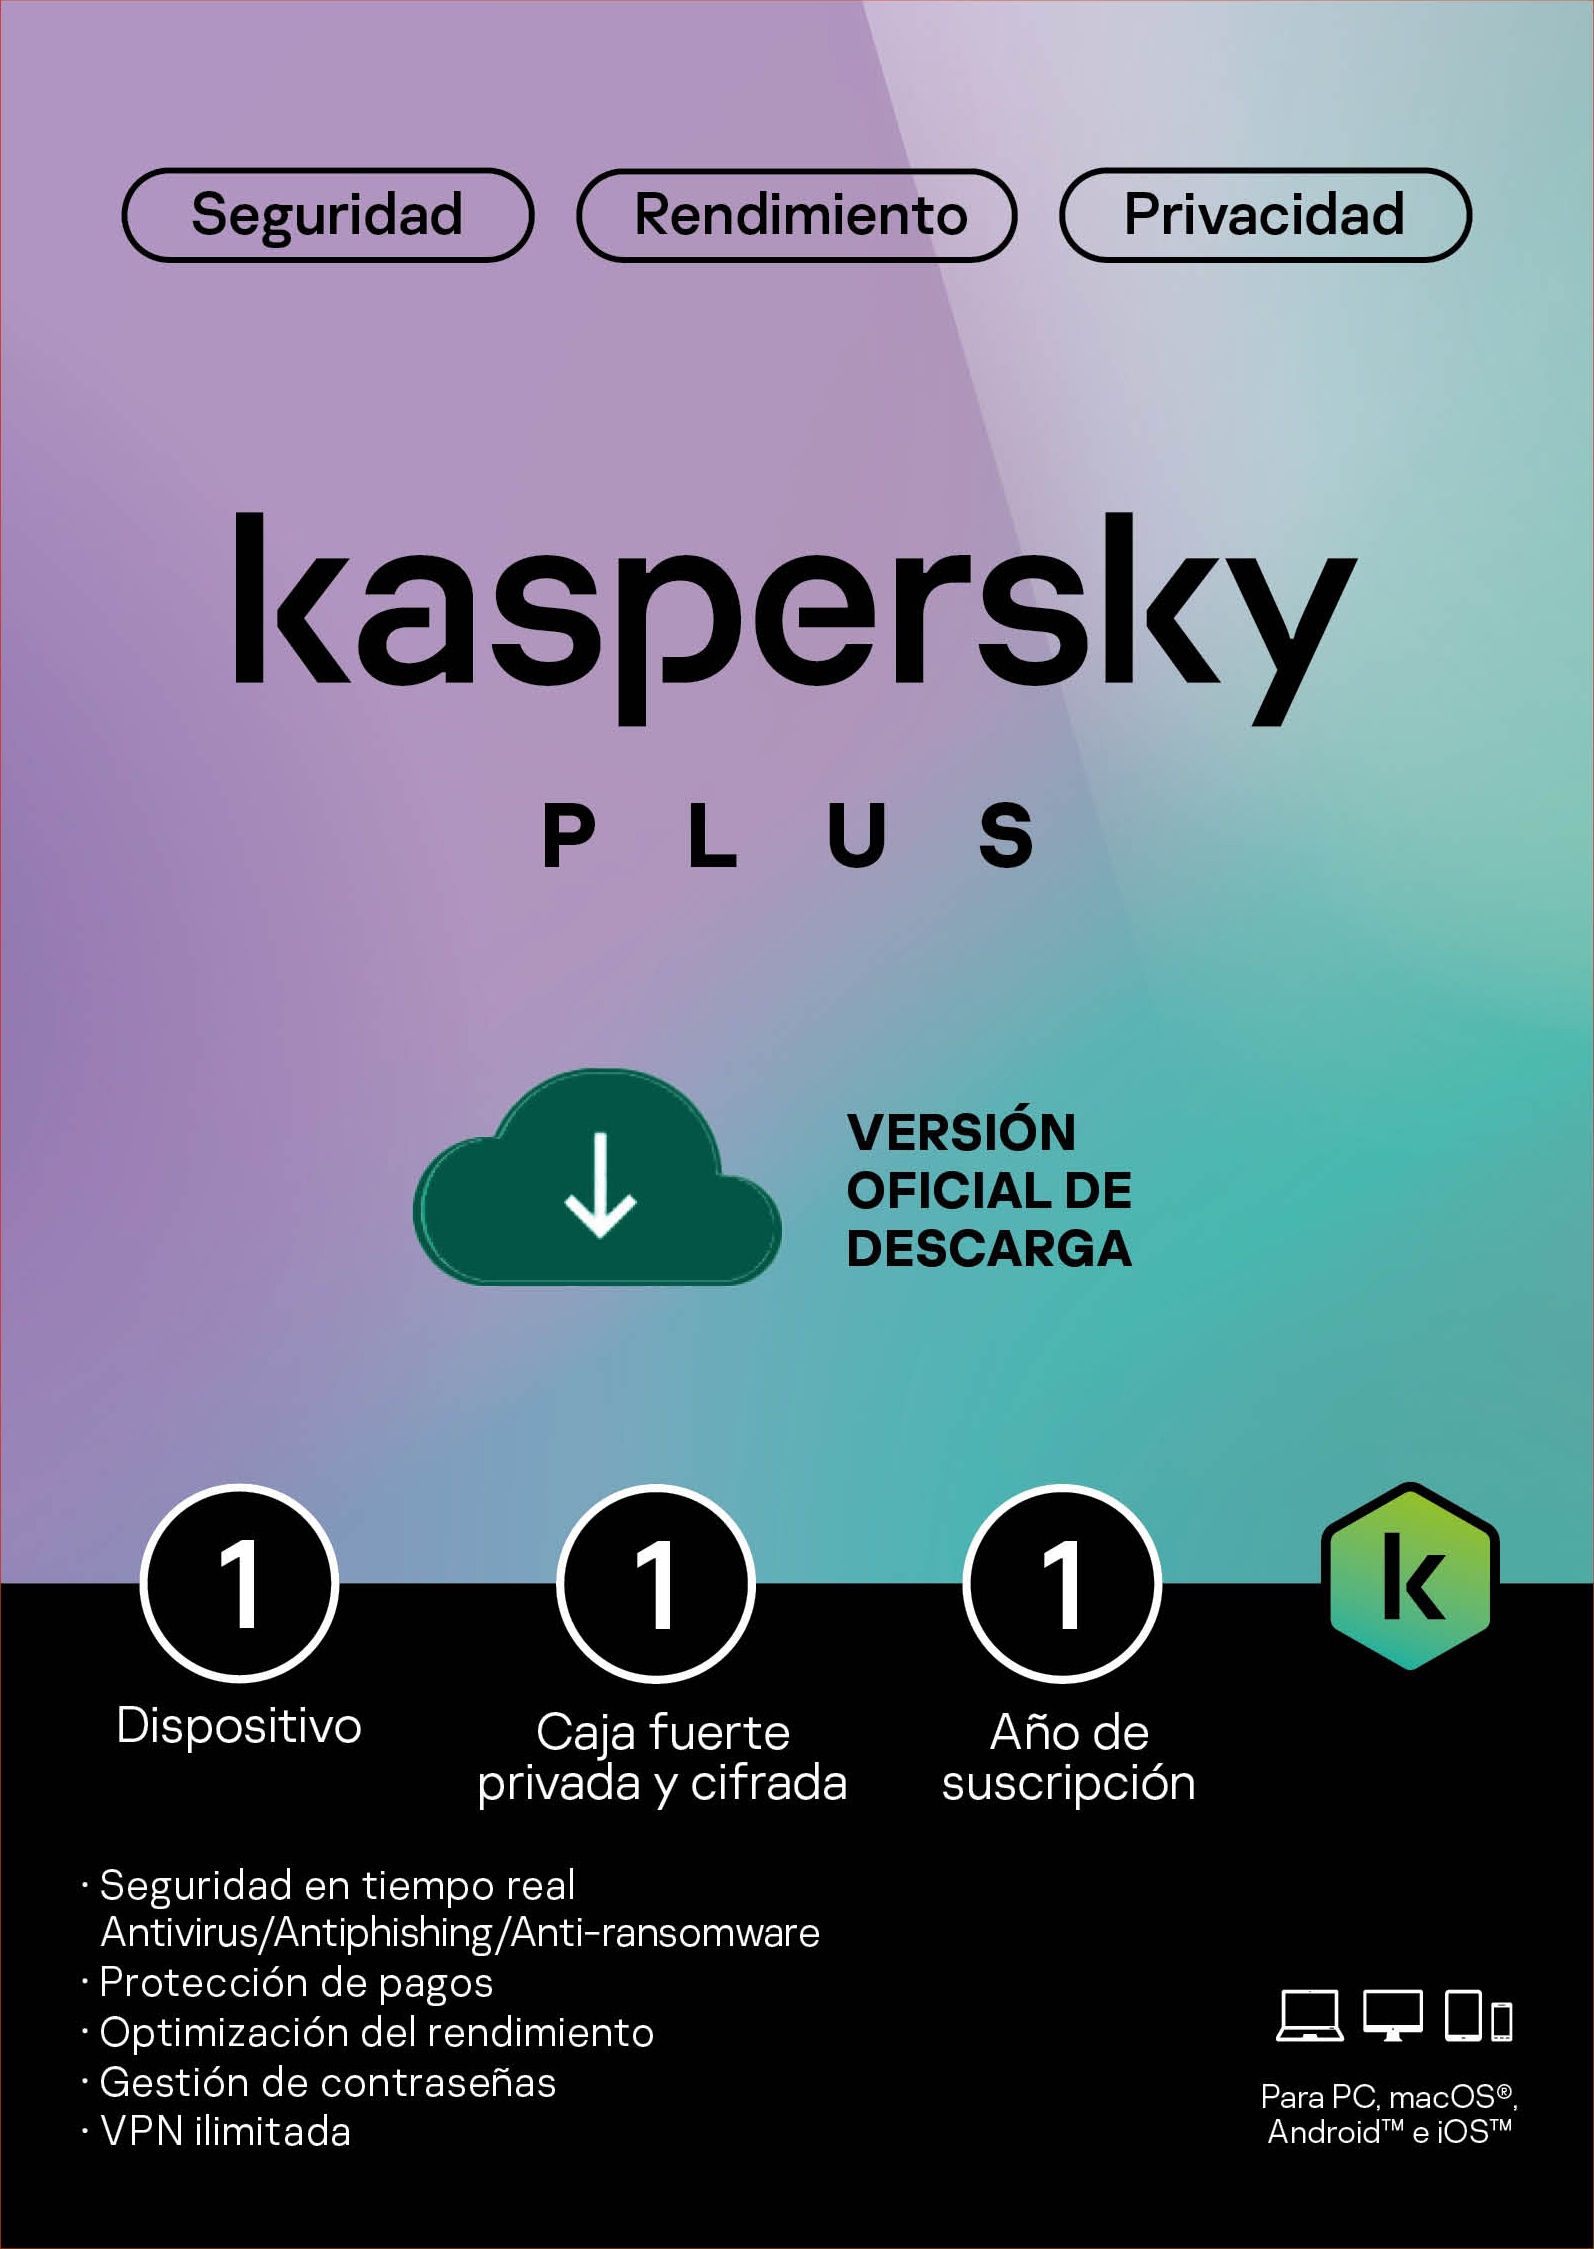 Licencia Kaspersky Plus 1 dispositivo por 1 año